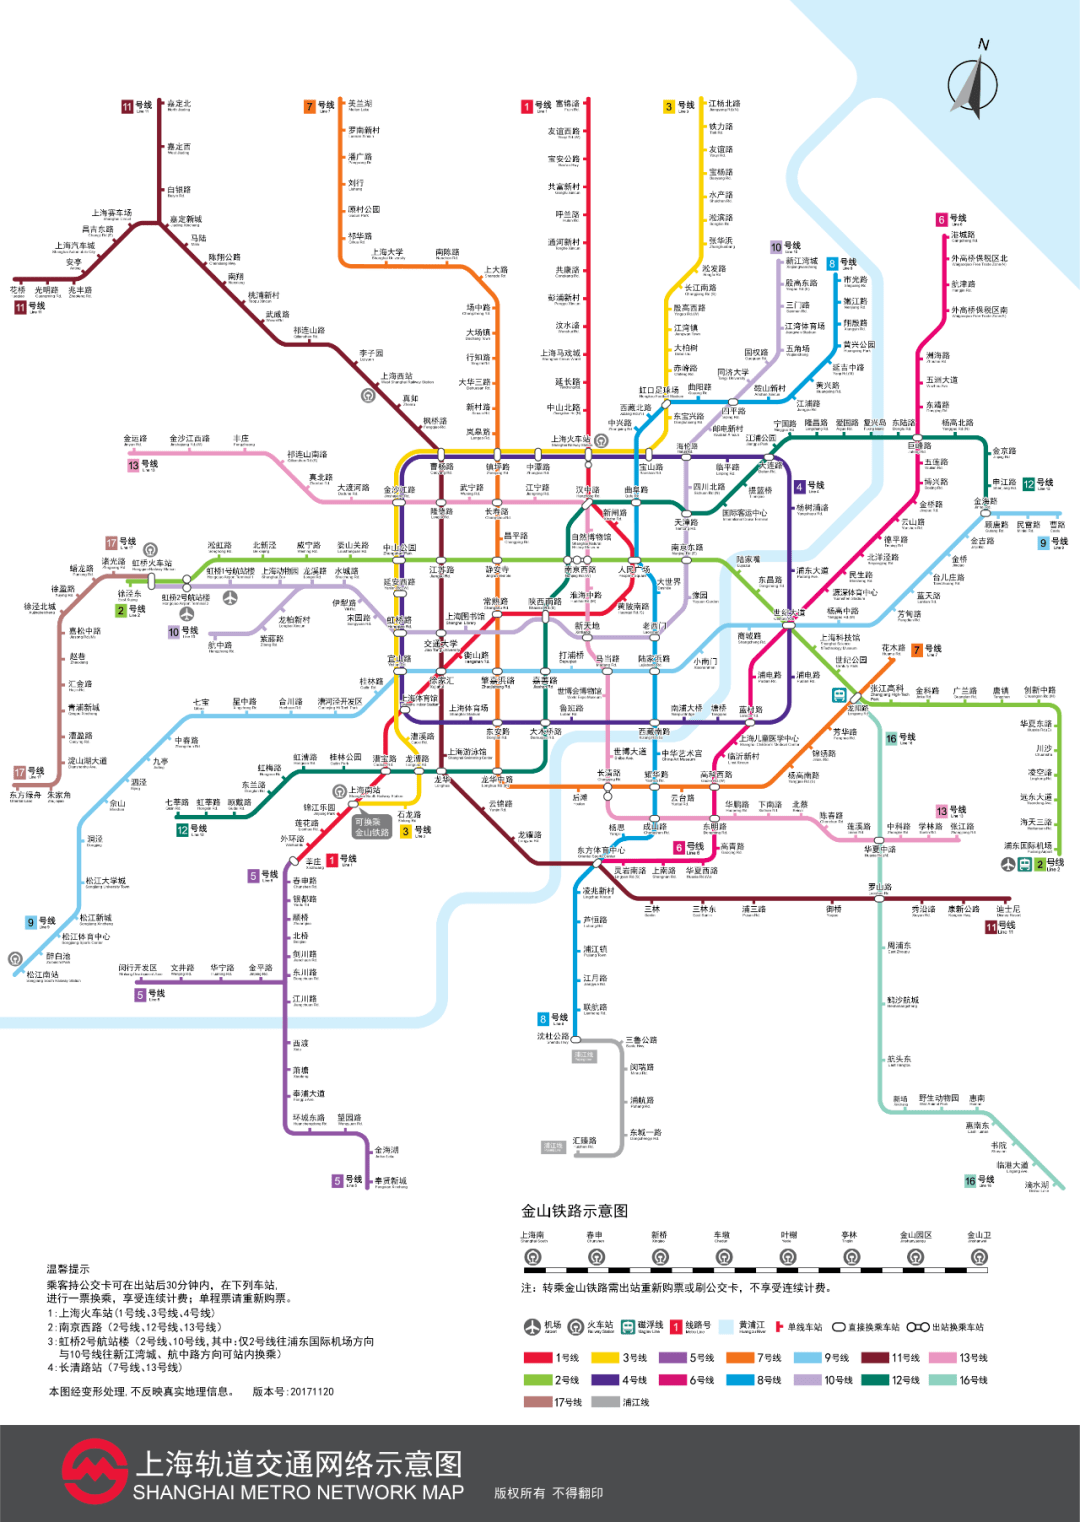 关注上海地铁车站数已达多少座最新示意图在此快来下载